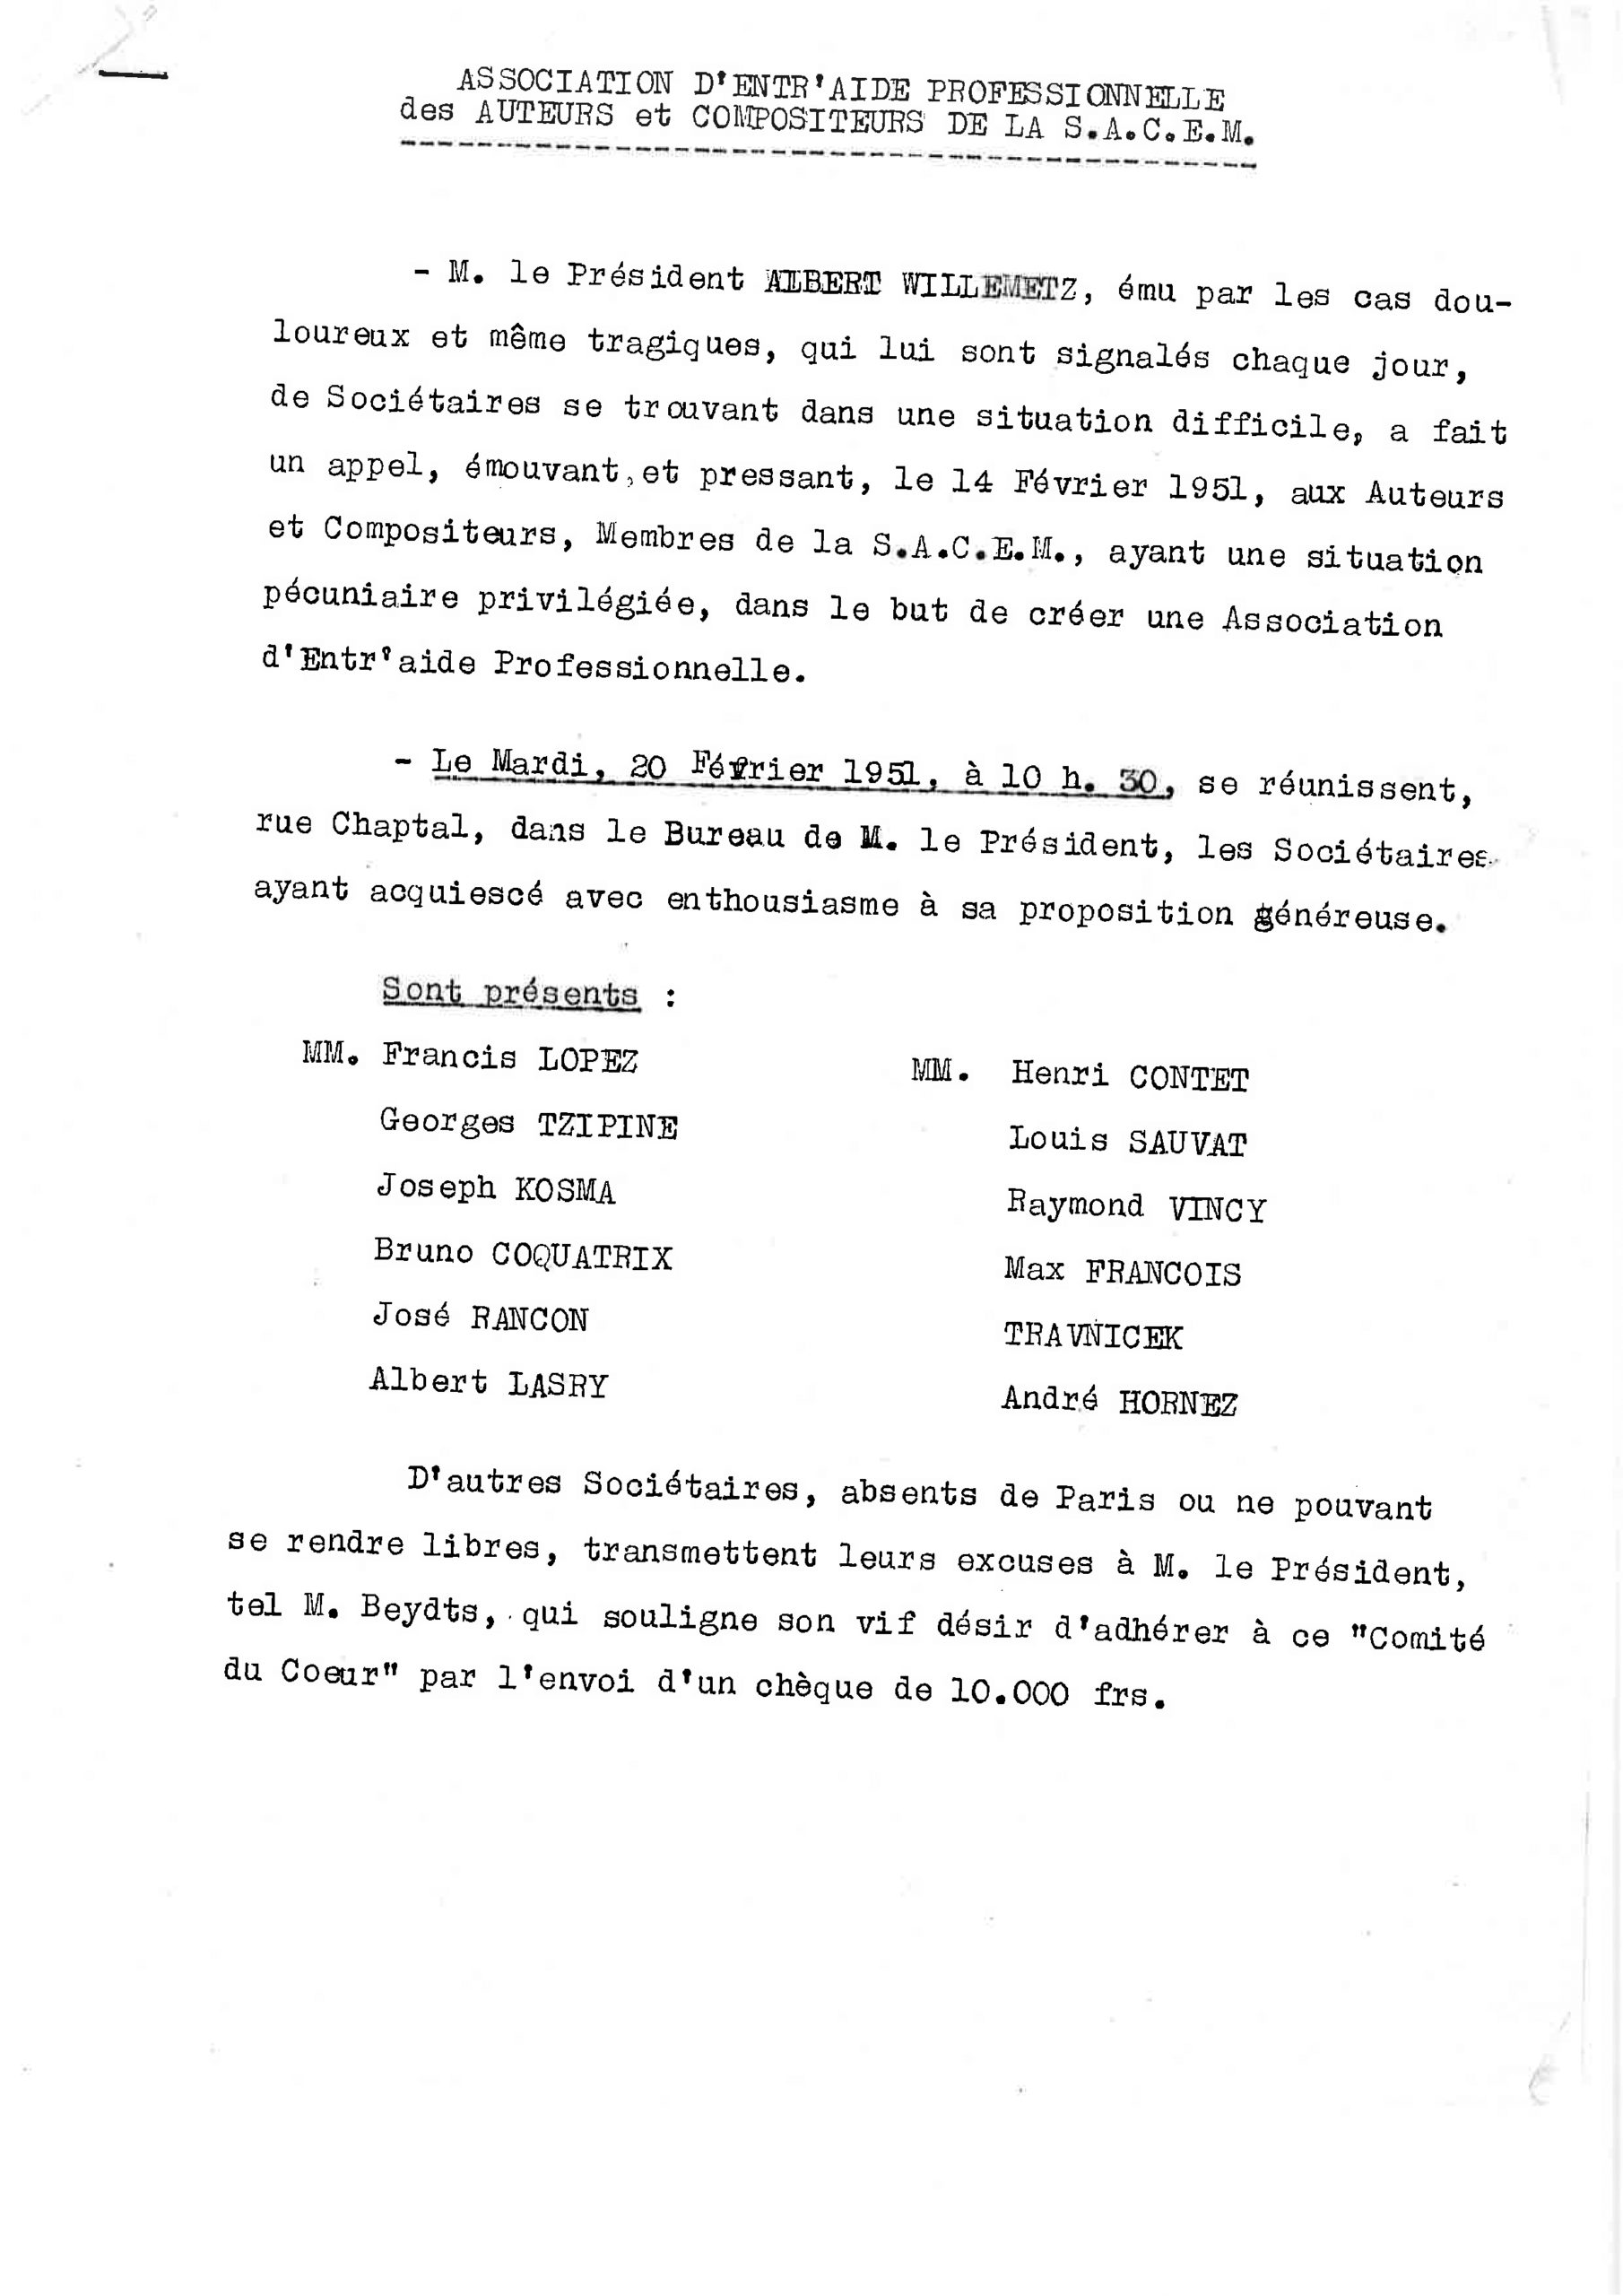 Archive : rapport de réunion, datant du 20 février 1951, relatif à la création de l’association.